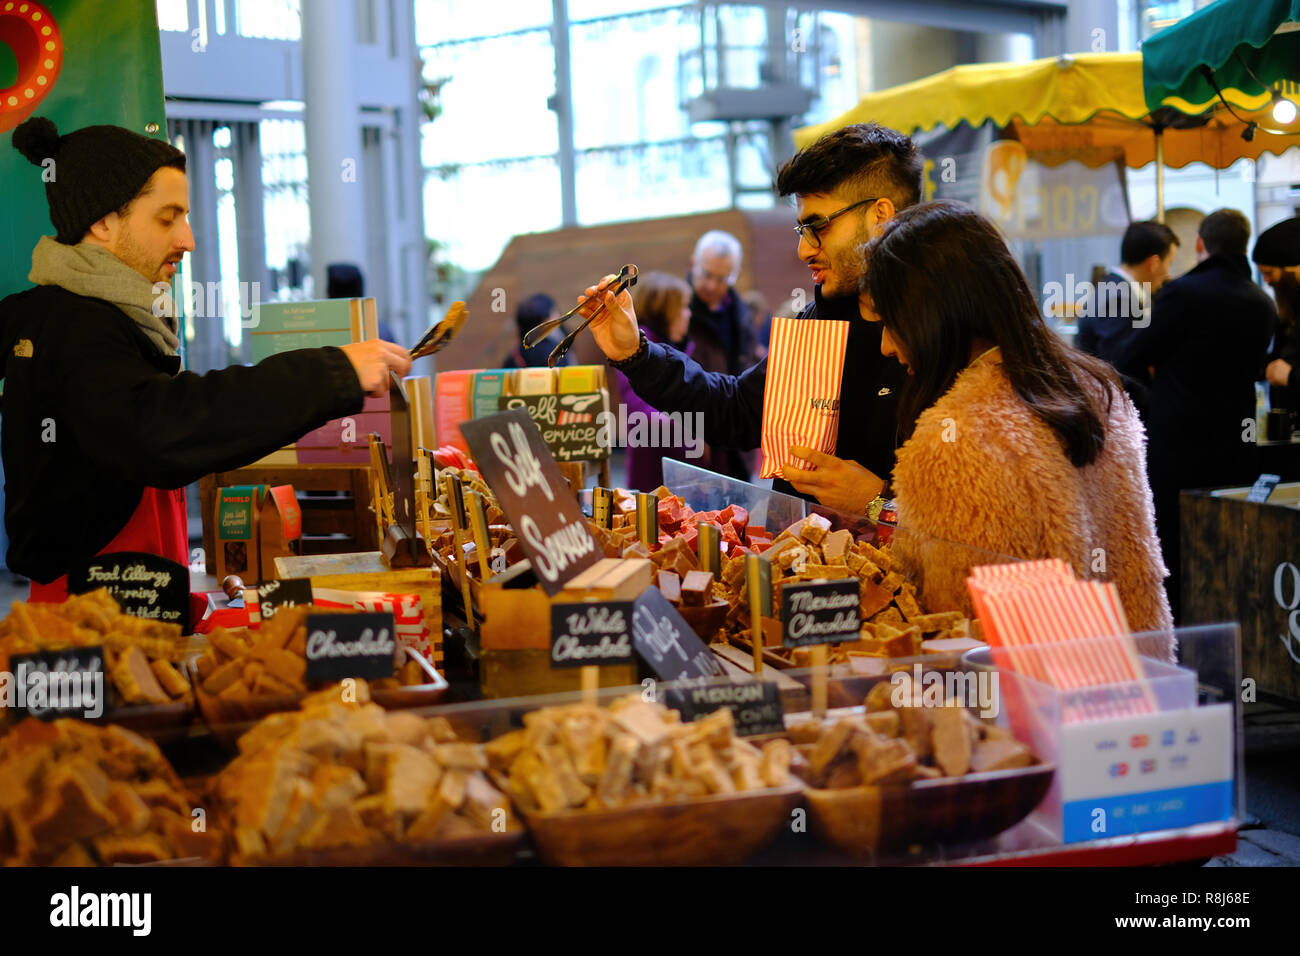 Borough Market, London, United Kingdom Stock Photo